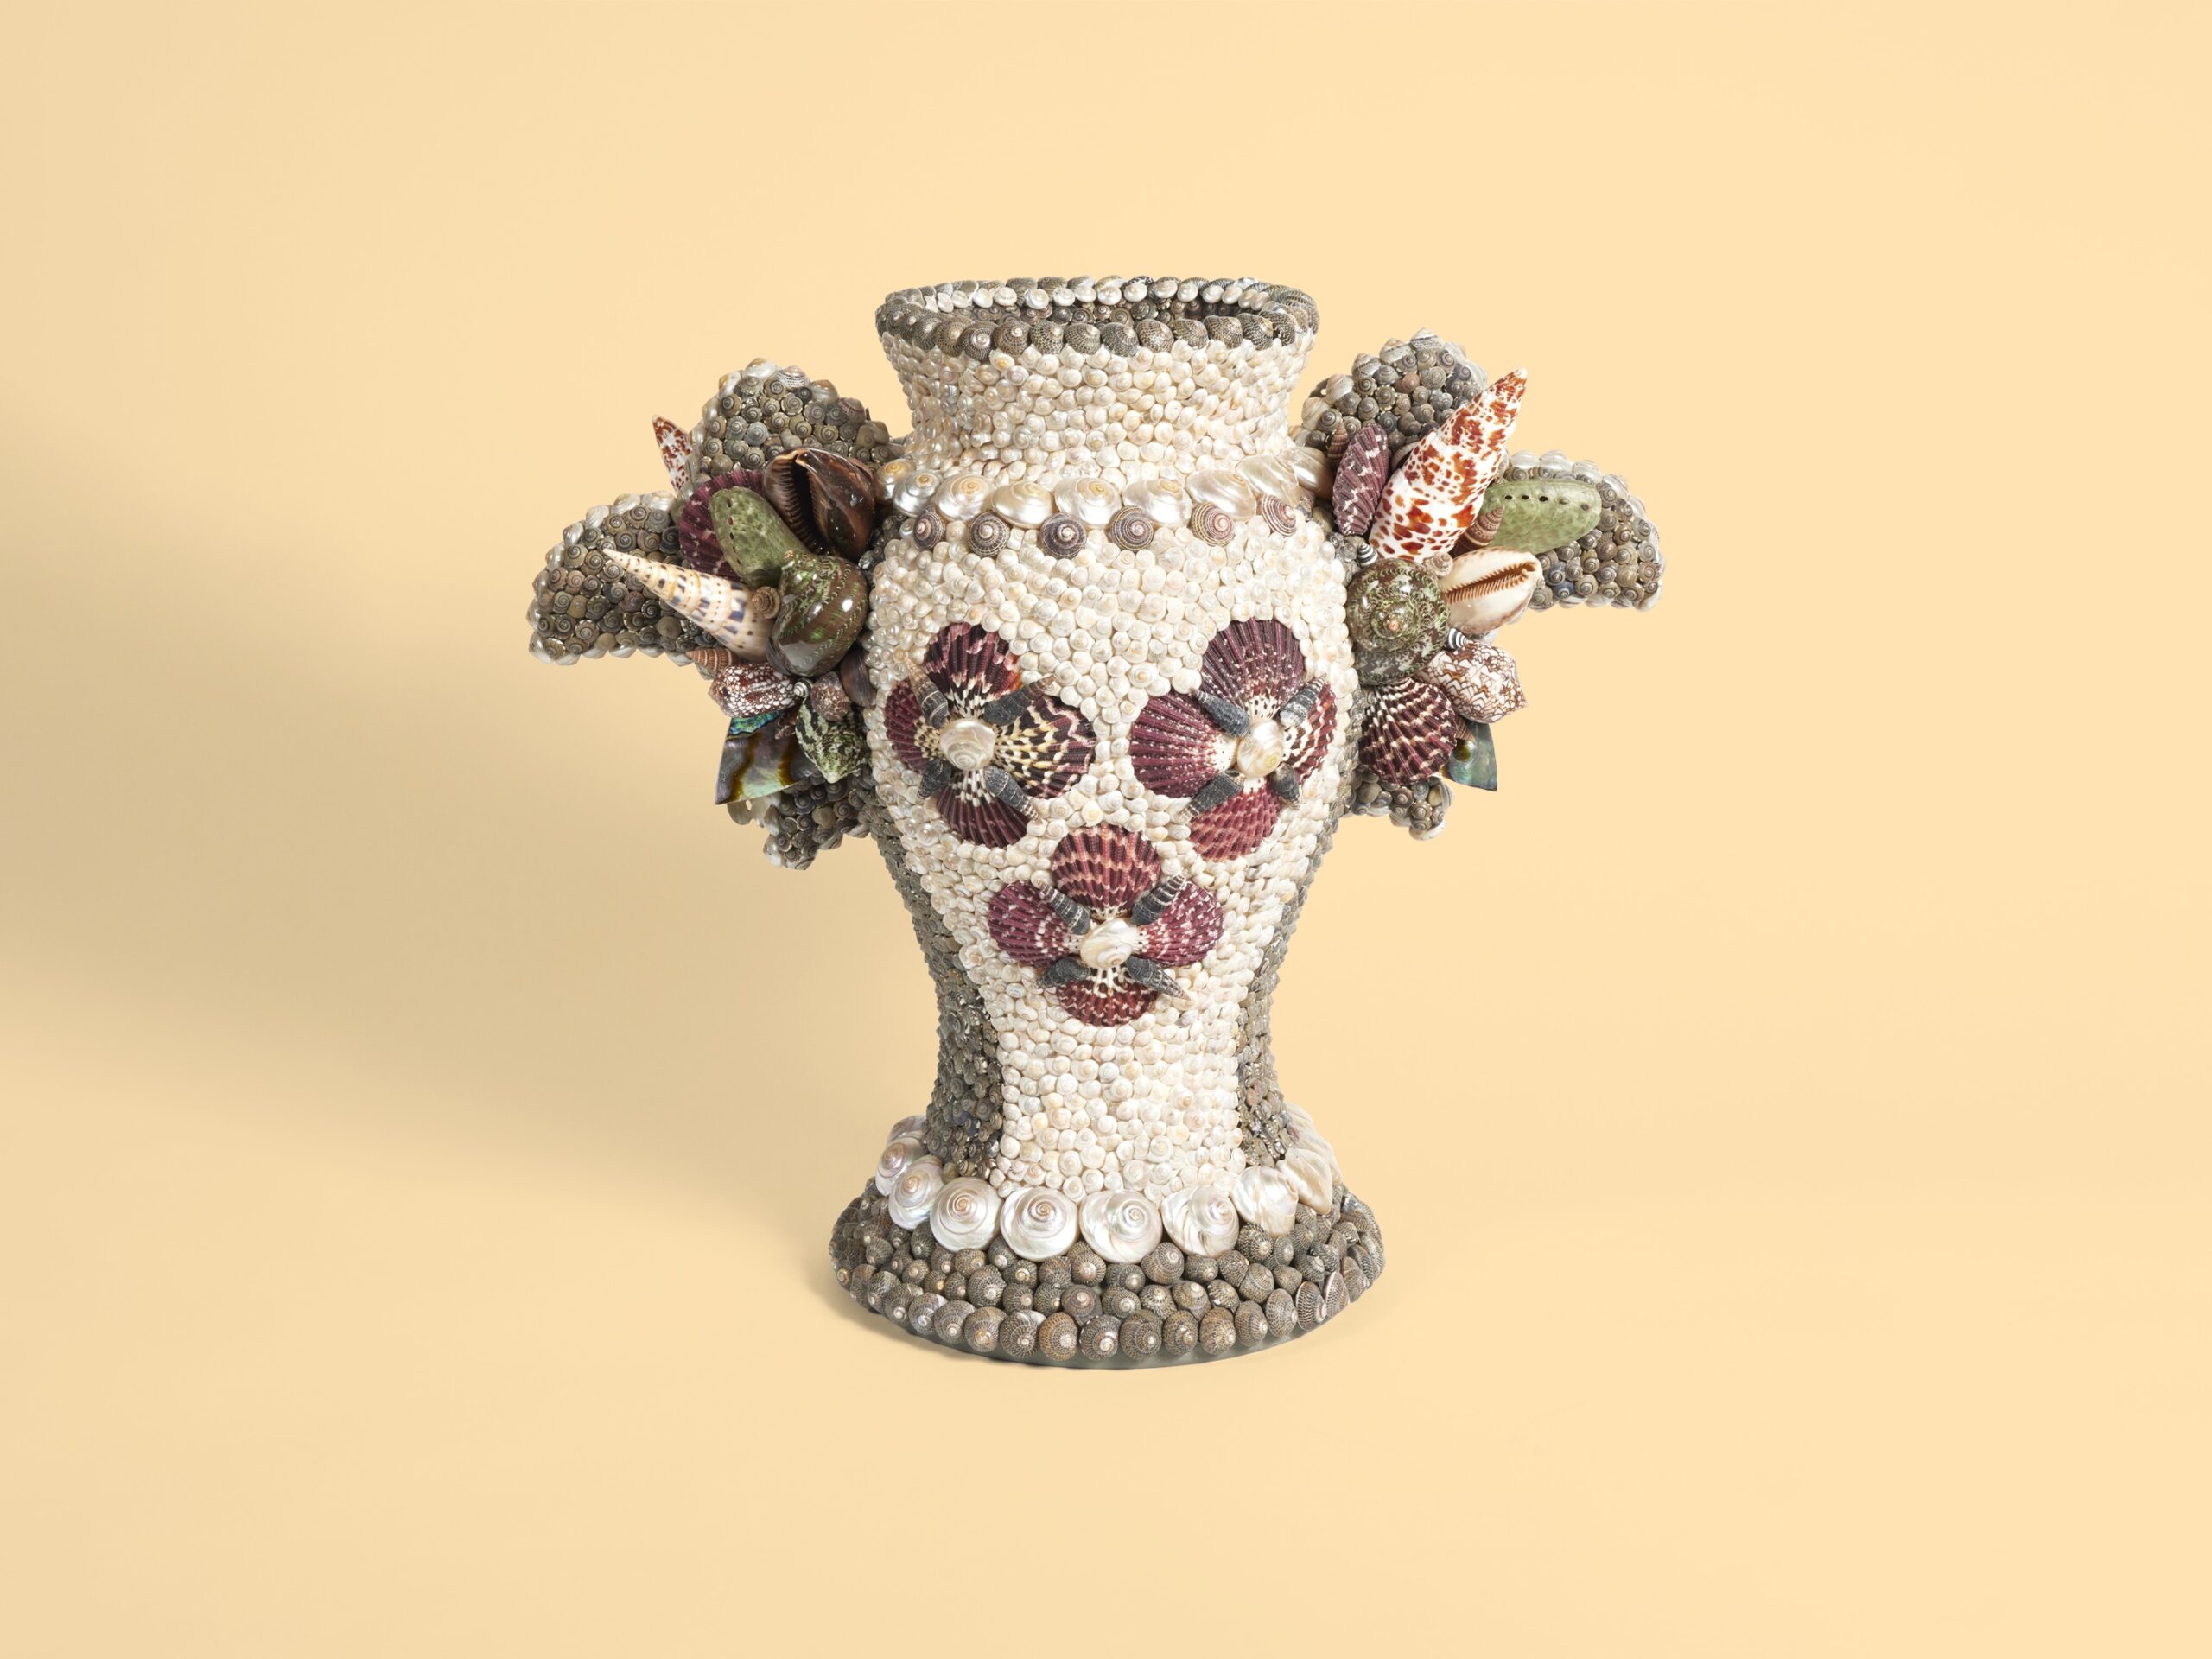 Seashell vase II